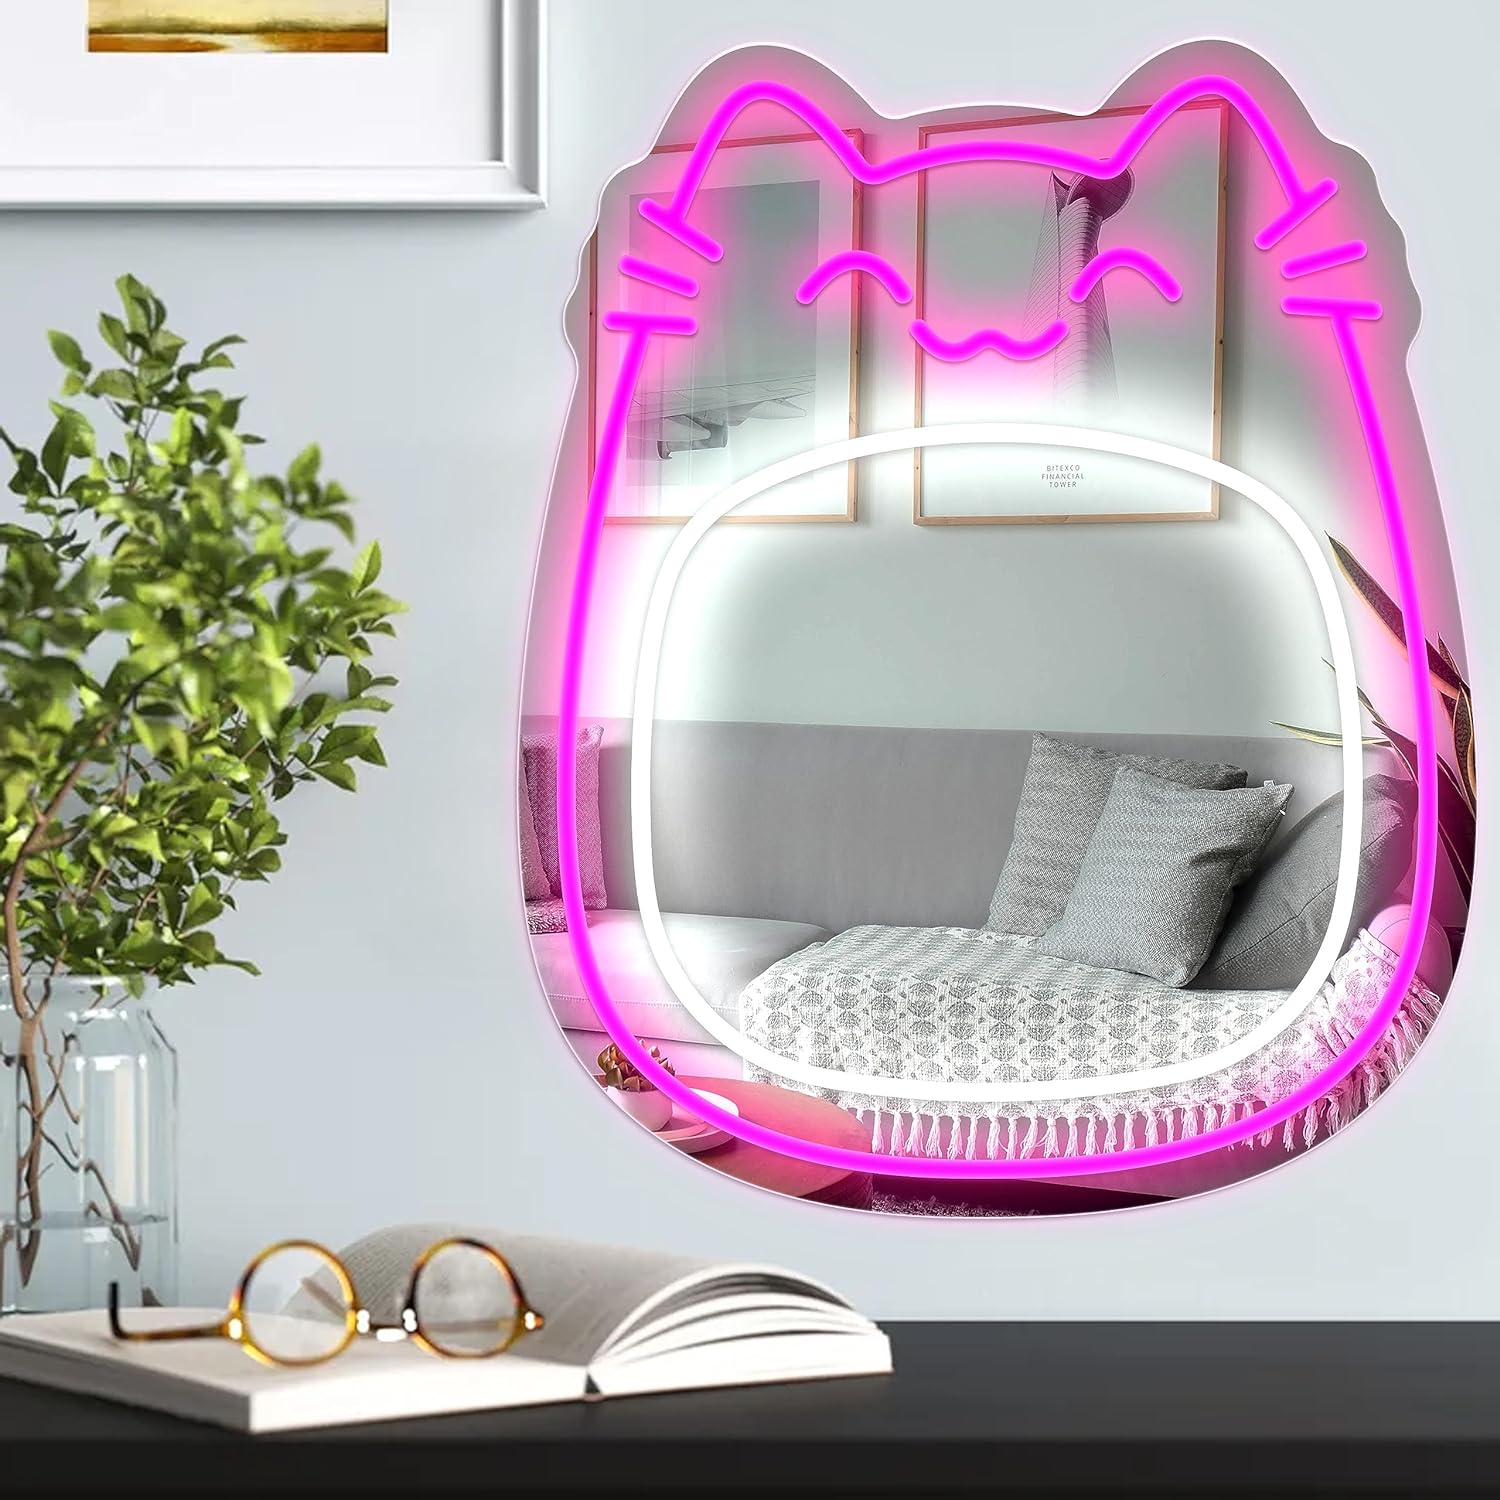 NEONIP-100% Handmade Cat Mirror Neon Light for Girls Bedroom